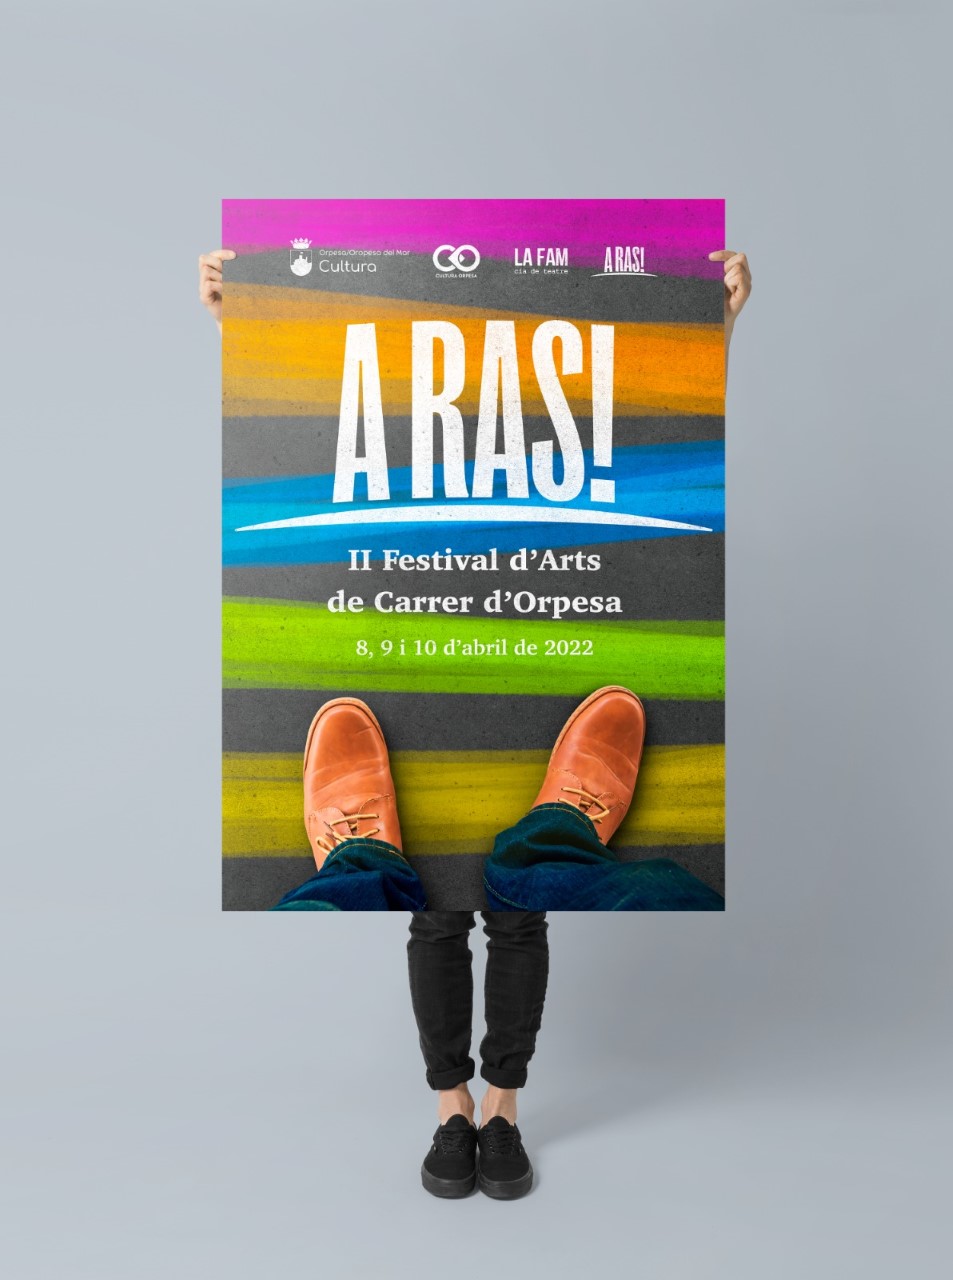 La segunda edición del festival A RAS! aterriza en Oropesa del Mar este abril